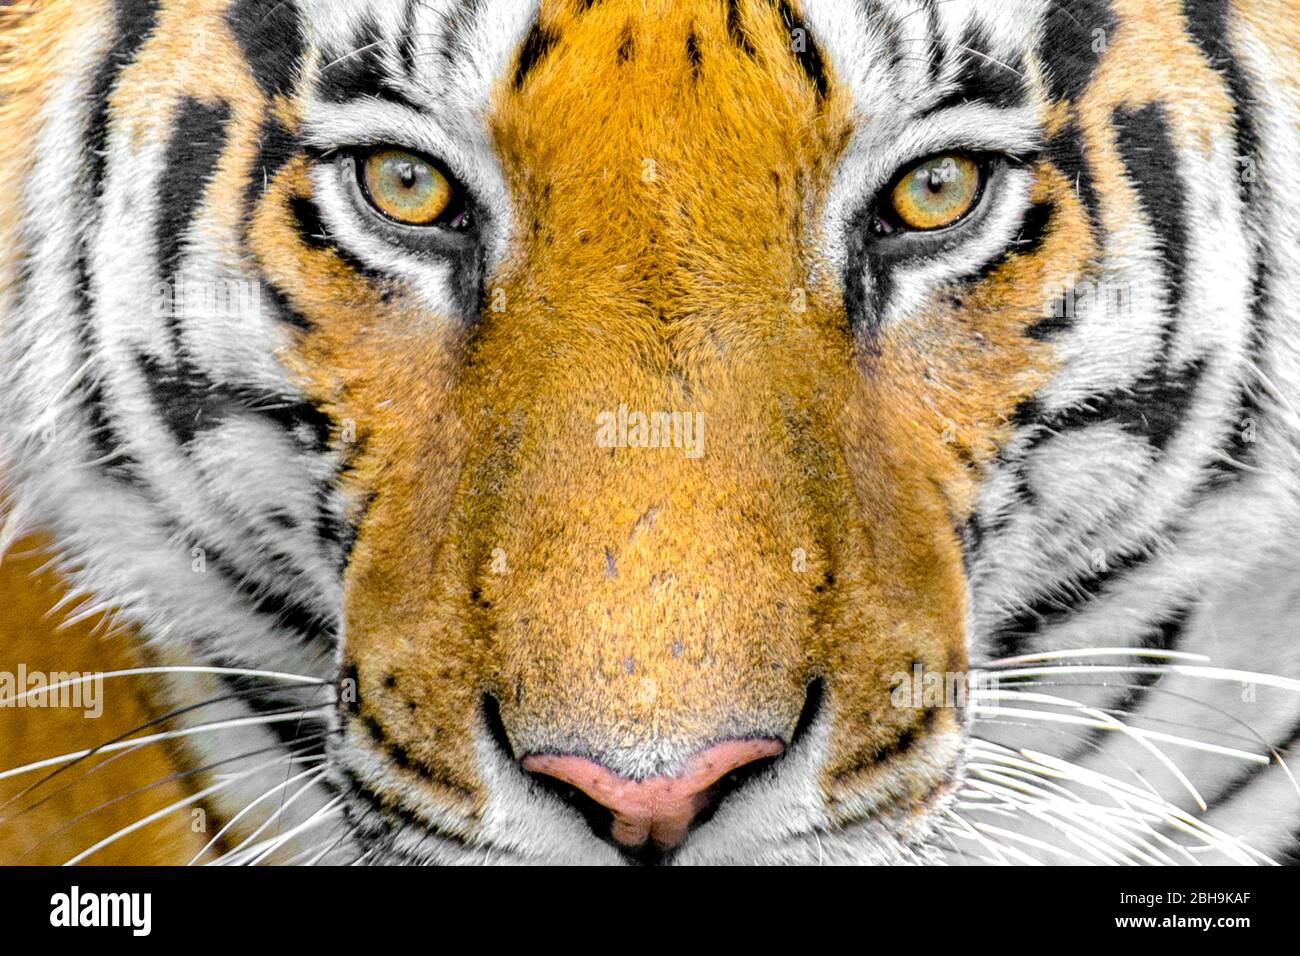 Bengal tiger head close up, India Stock Photo